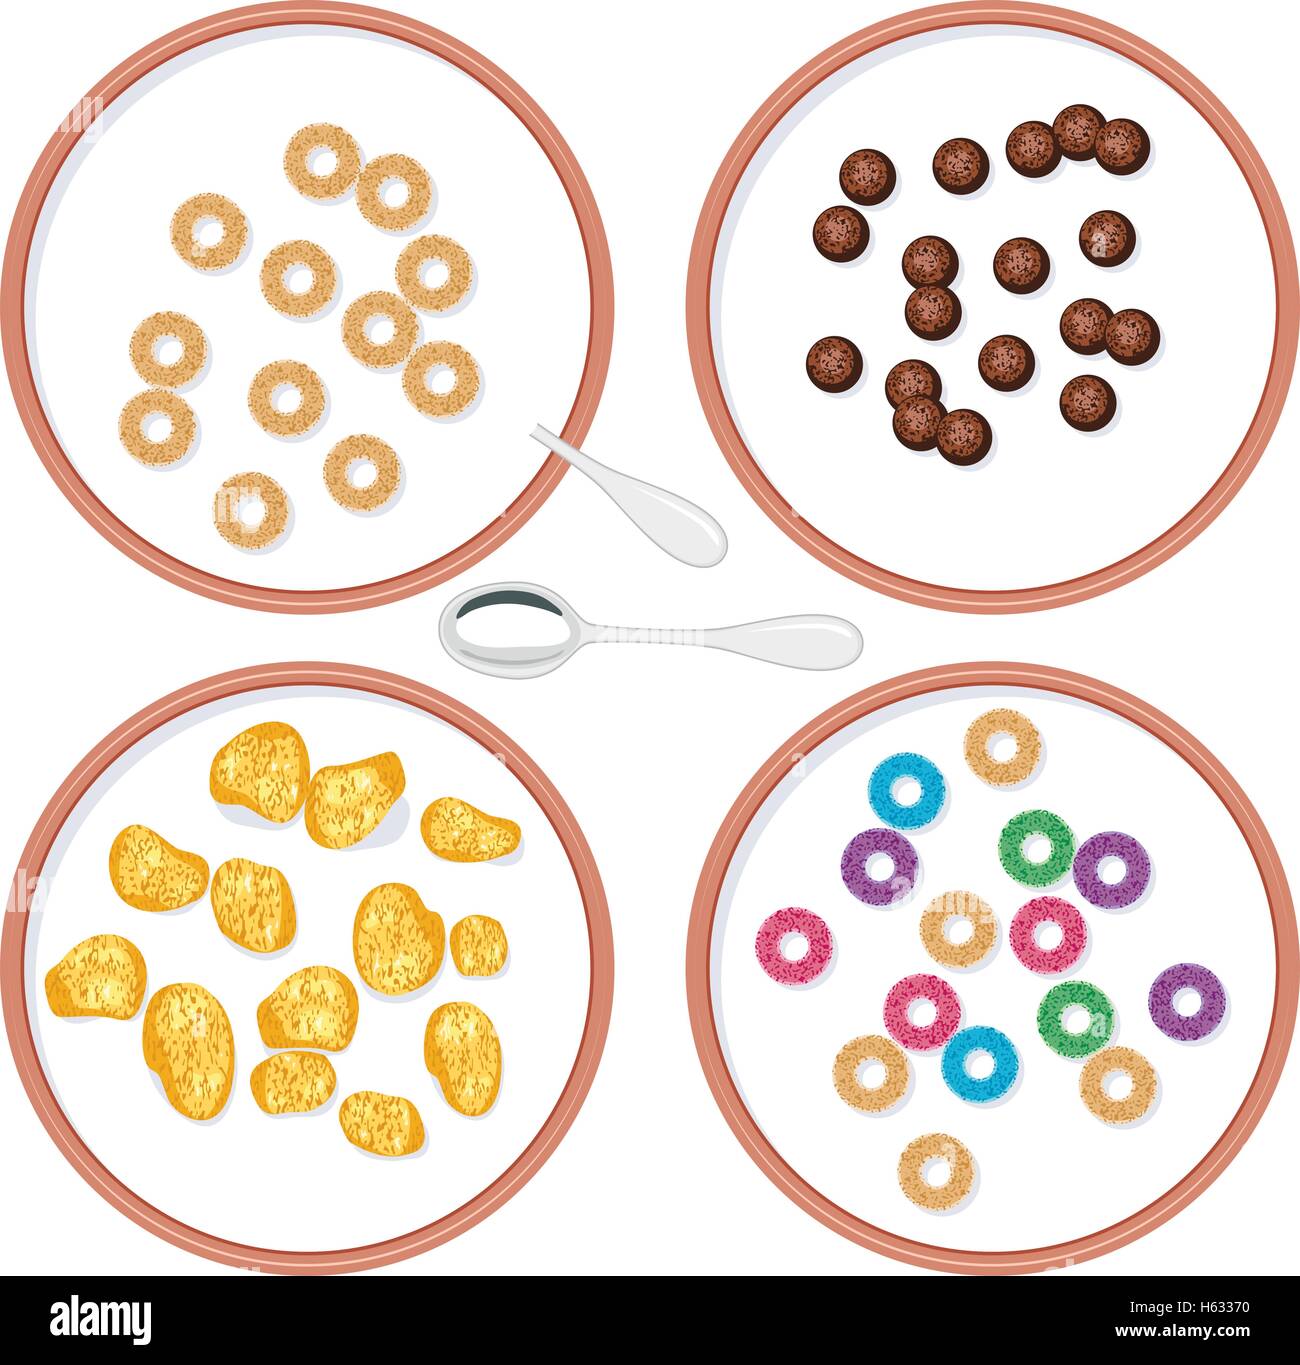 Vue de dessus du vecteur Ensemble de bols de céréales à grains entiers avec petit-déjeuner dans le lait pour les enfants Illustration de Vecteur